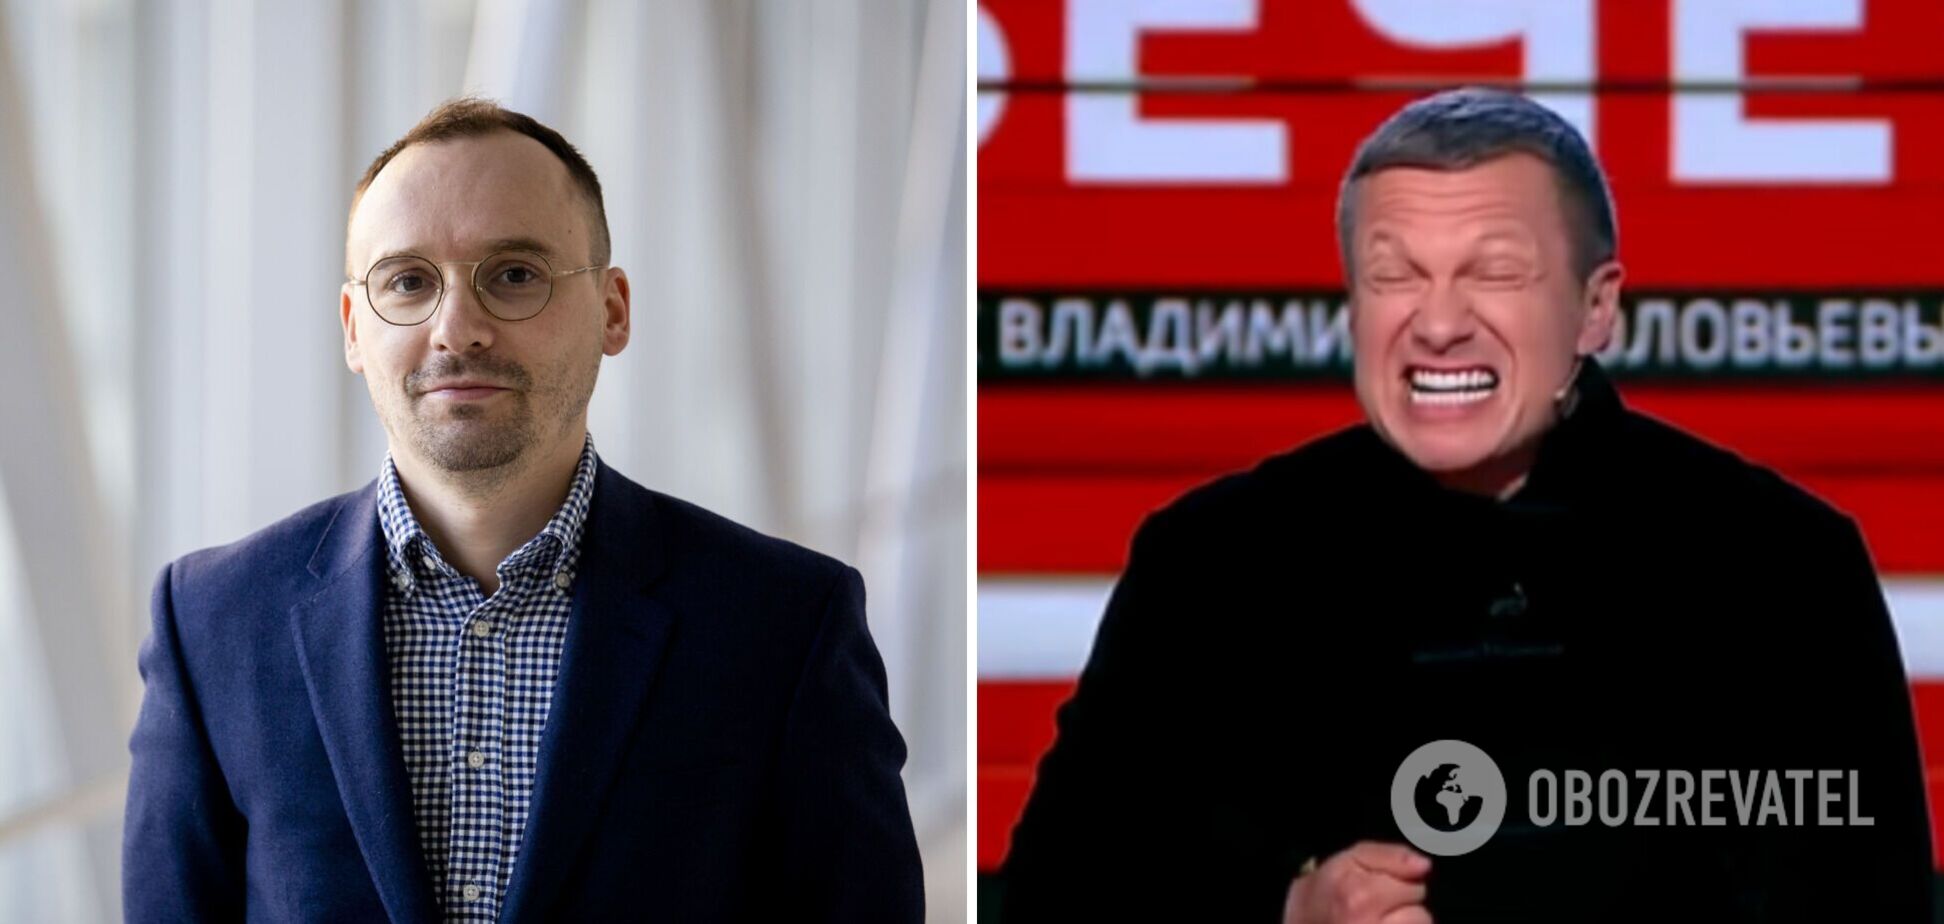 'Дякую, у мене є пральна машина': литовський депутат потролив Соловйова, який запропонував 'вторгнутися в РФ'